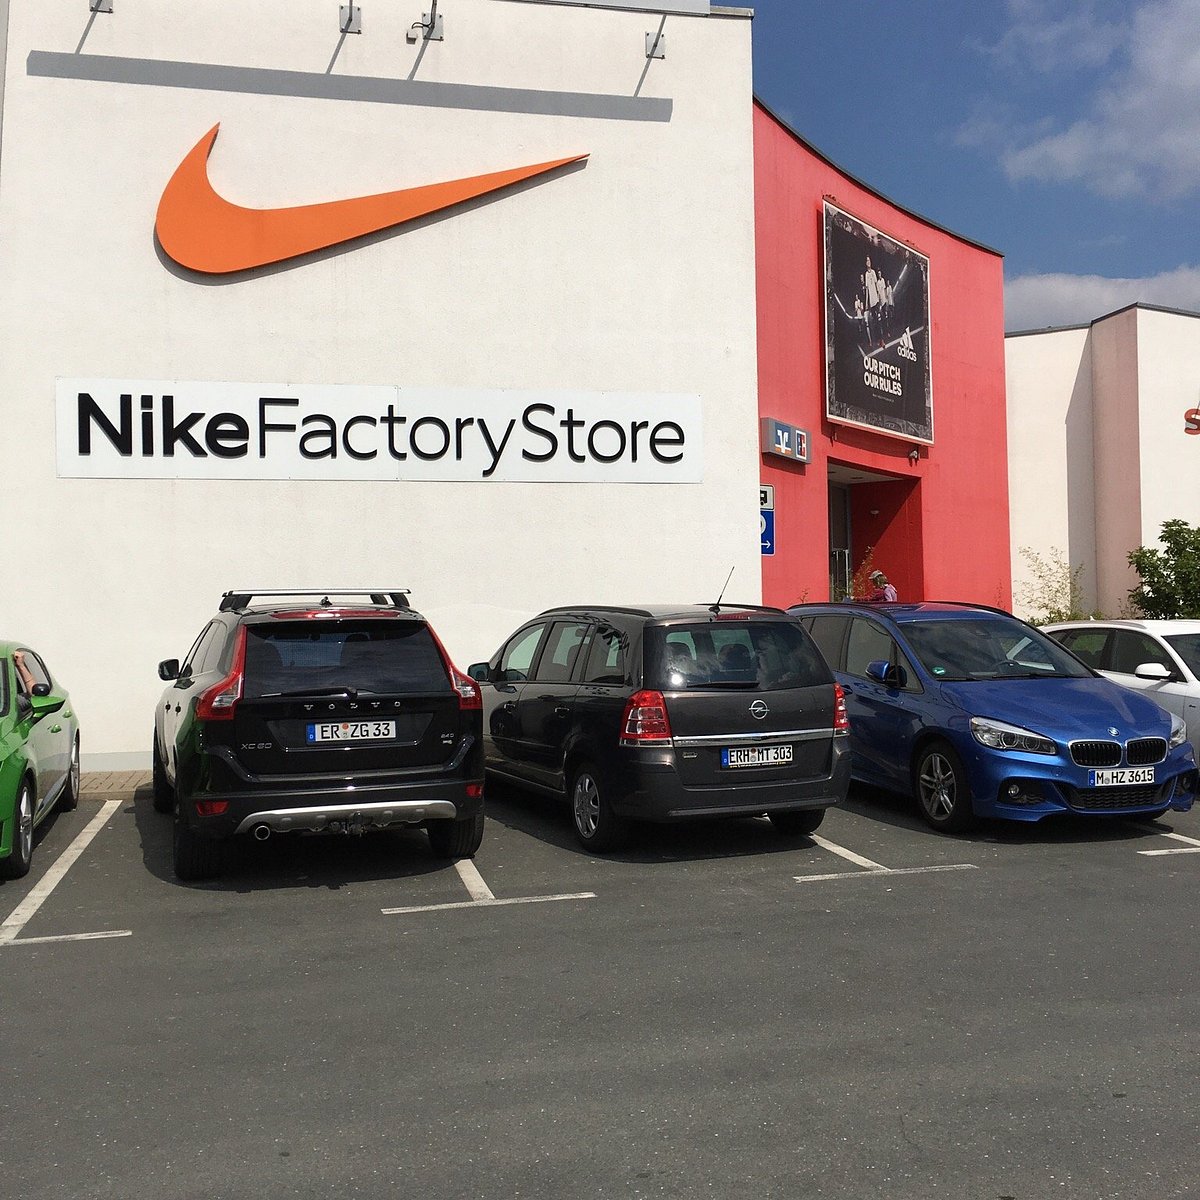 pompa Ajustamiento Evaluable Nike Factory Store (Herzogenaurach) - 2023 Lohnt es sich? (Mit fotos)